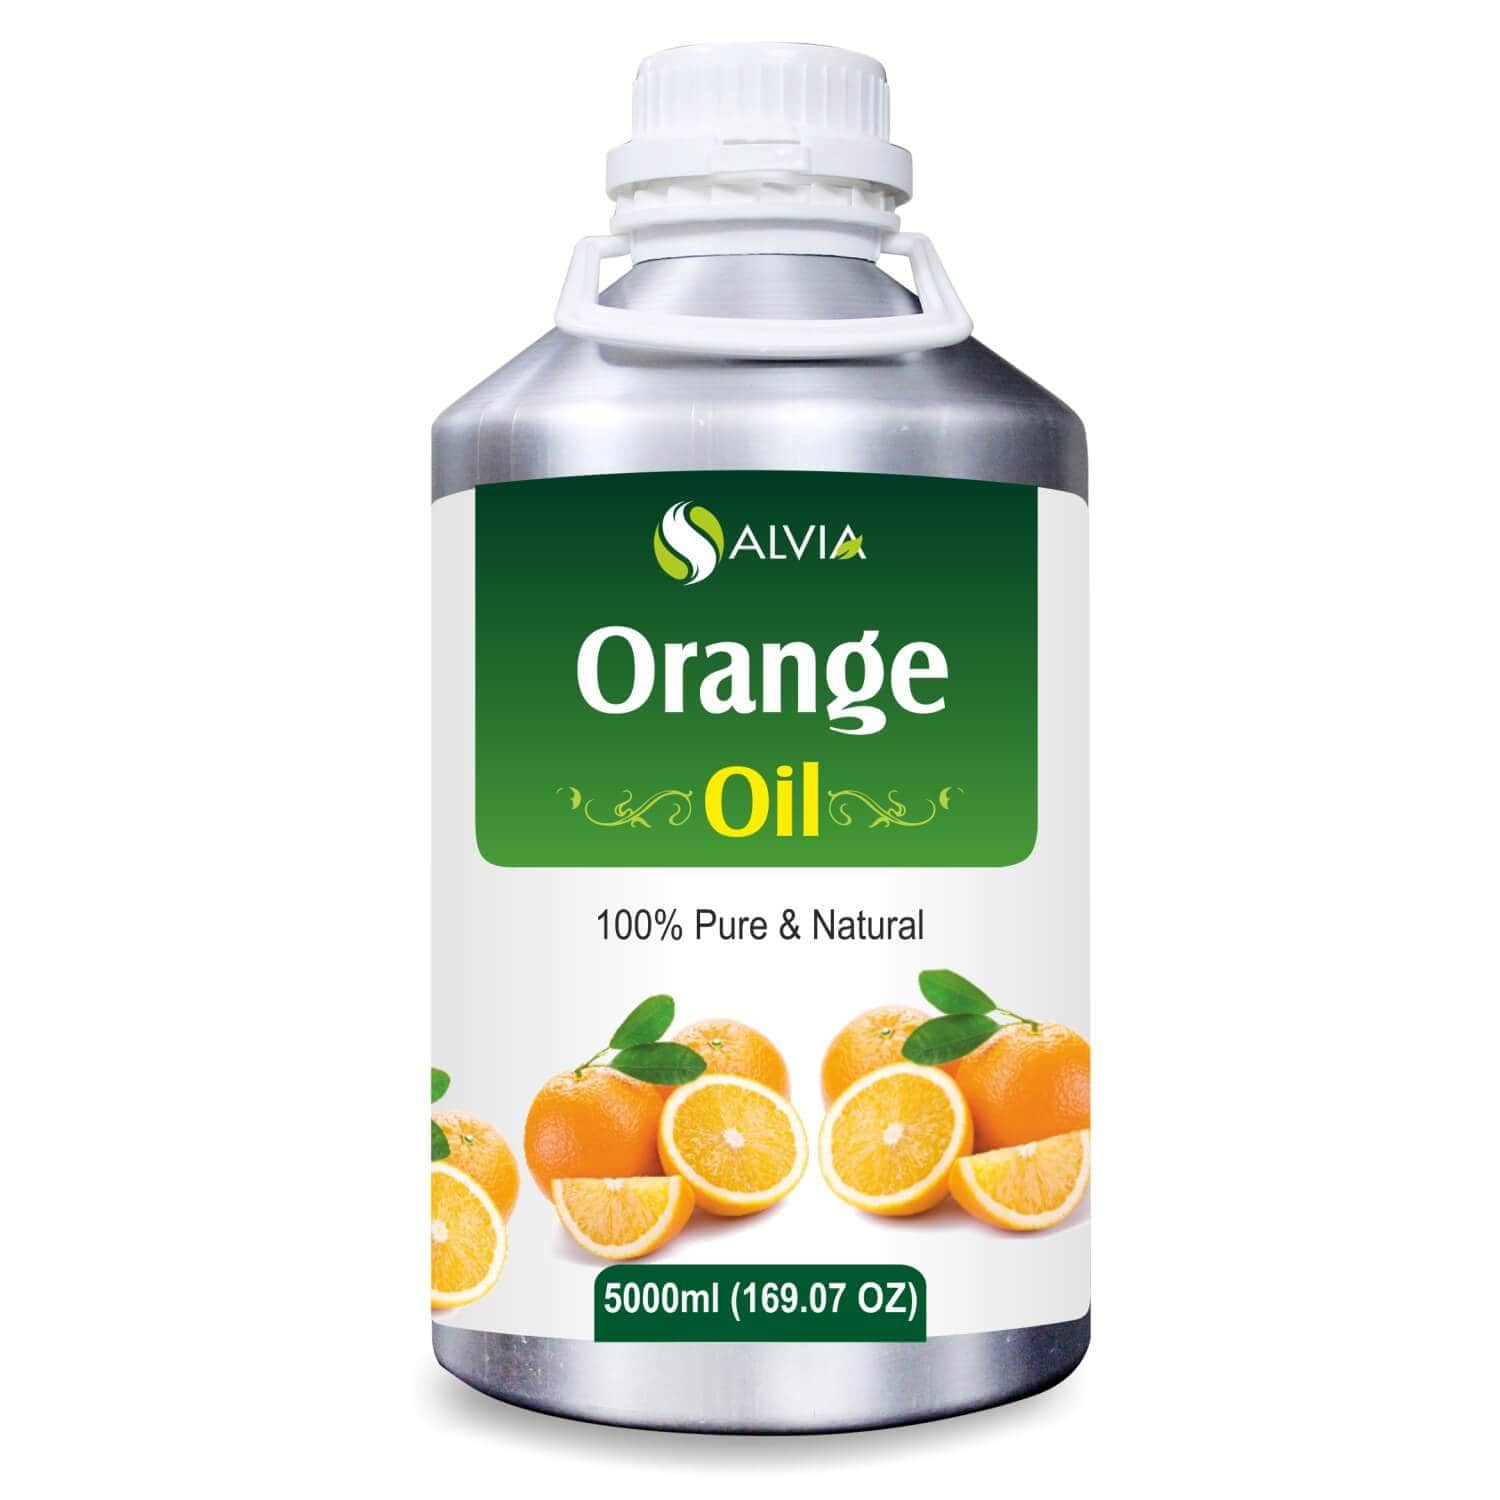 Salvia Natural Essential Oils 5000ml Orange Oil (Citrus sinensis) 100% Natural Pure Essential Oil